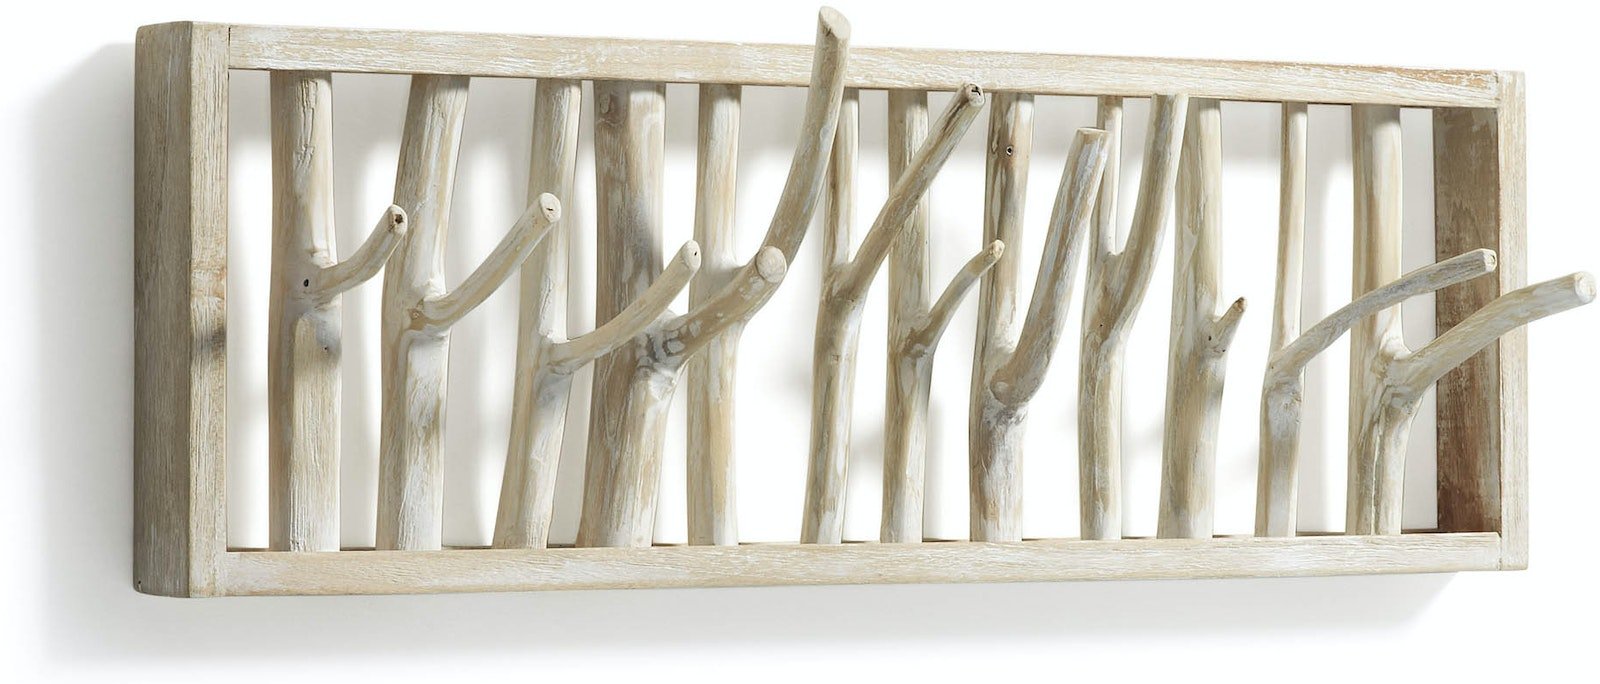 Billede af Muntfre, Væghængt knagerække, rustik, solidt træ by Kave Home (H: 20 cm. x B: 60 cm. x L: 12 cm., Natur)